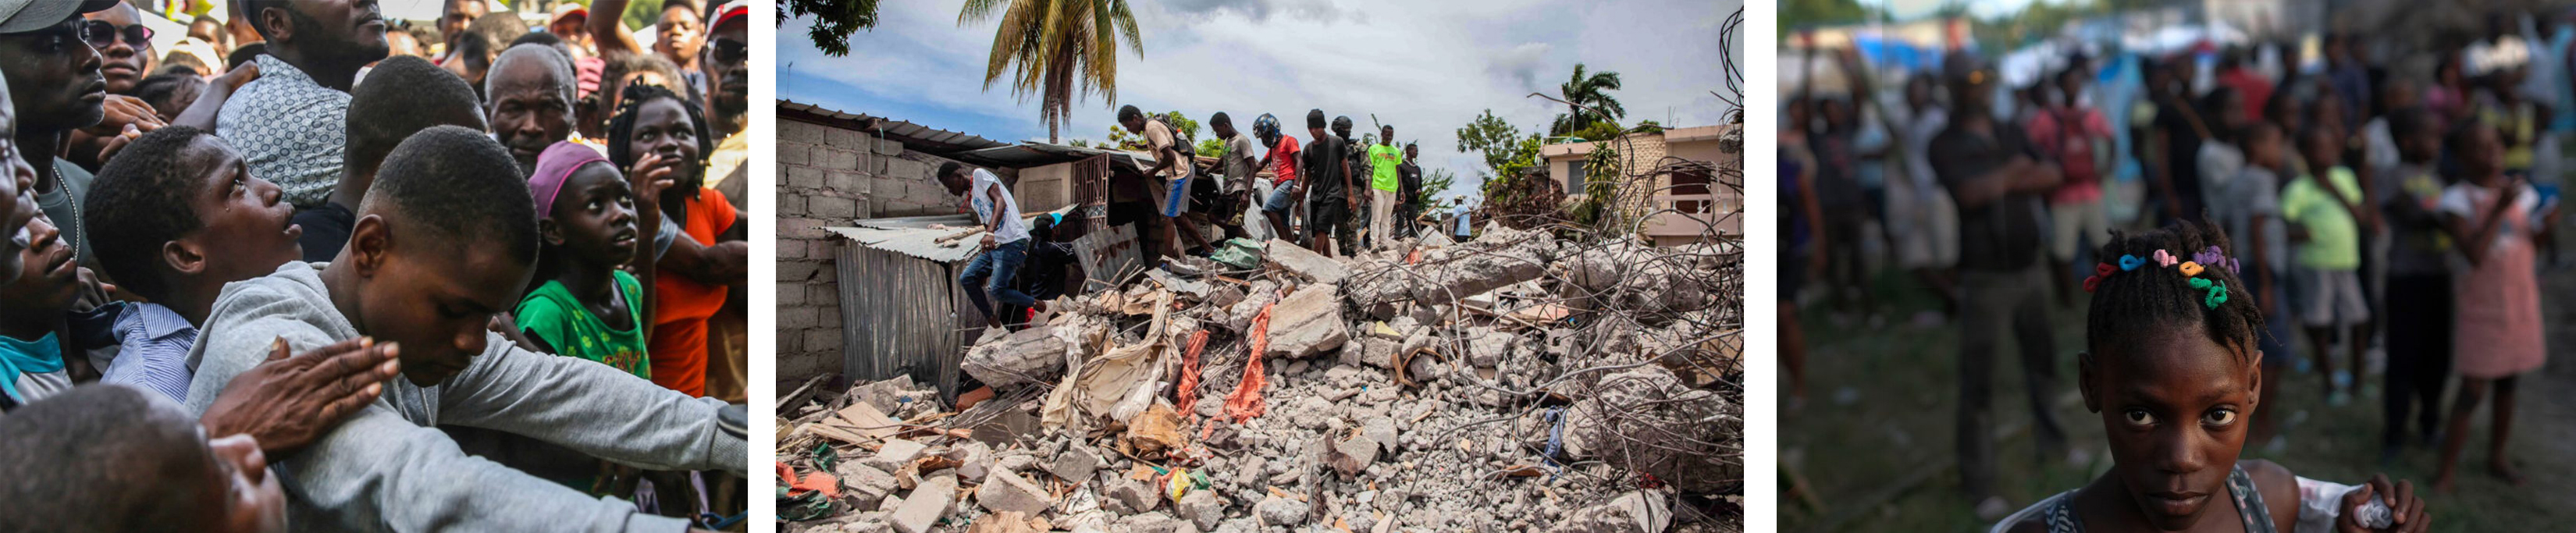 haiti earthquake combined photo